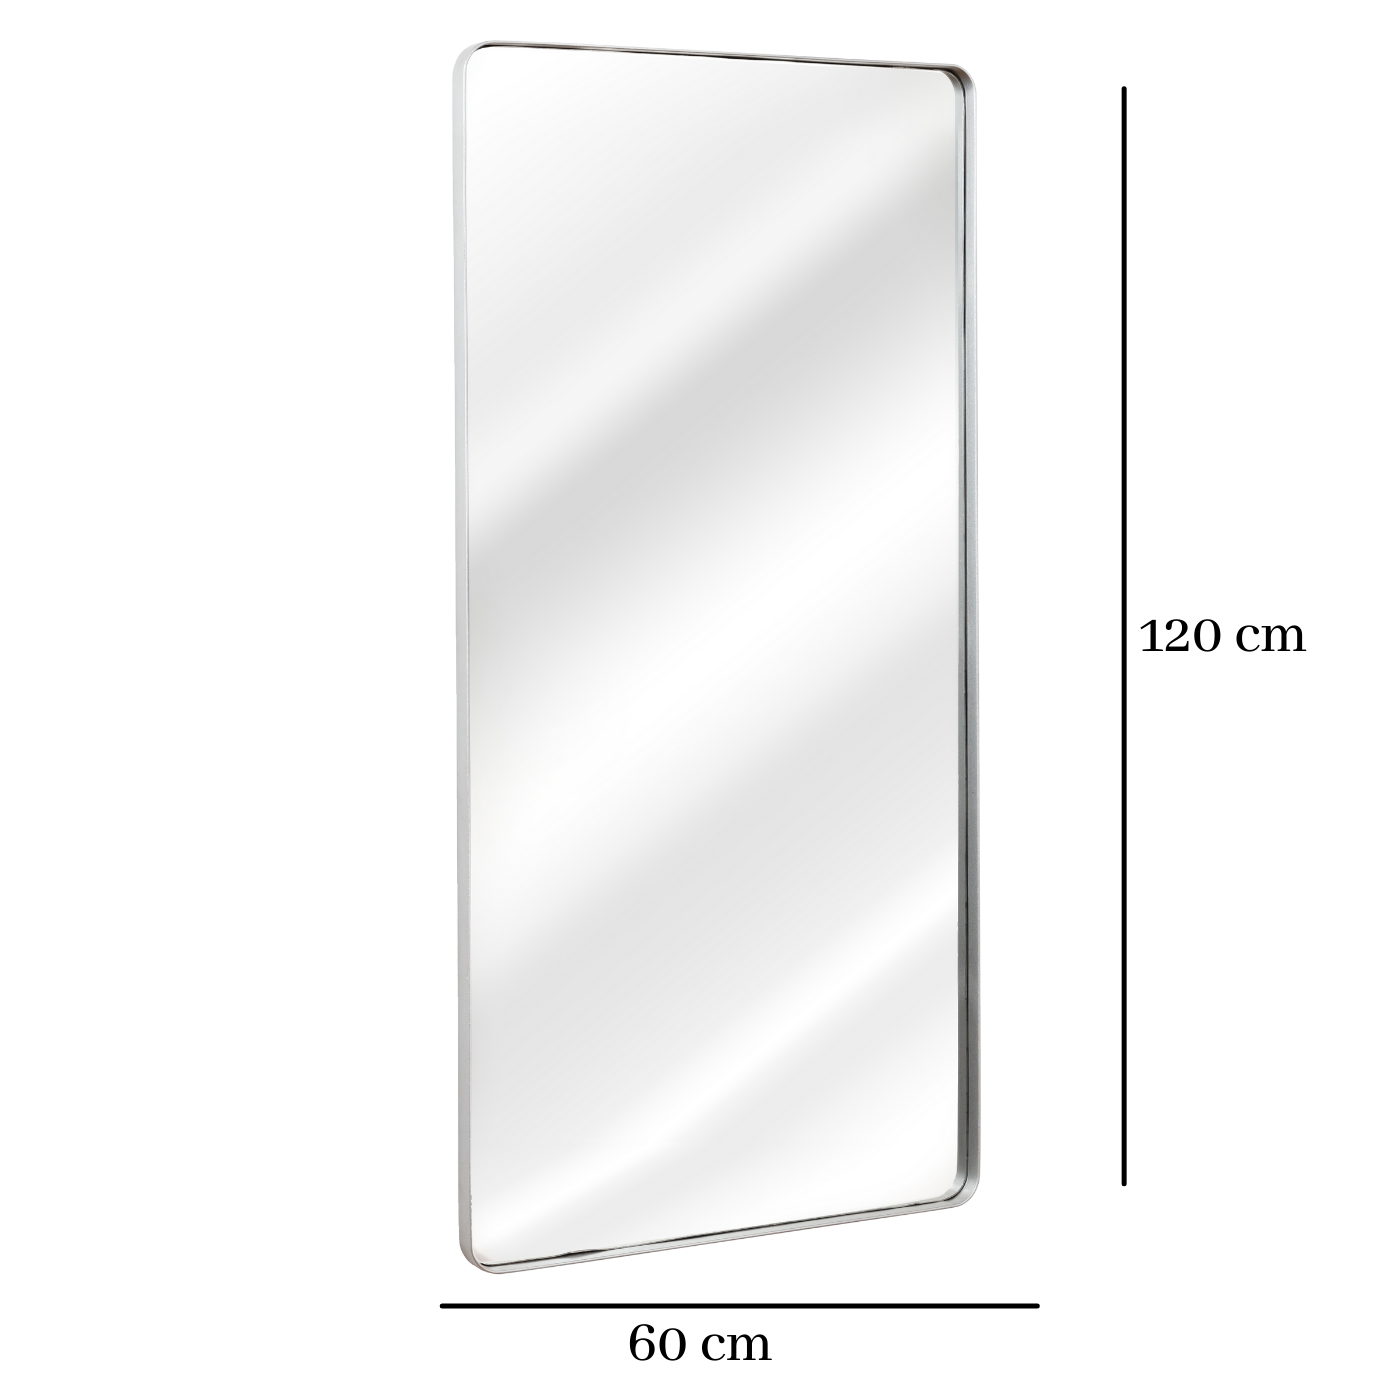 Espelho Grande Retangular Moldura Banheiro Quarto Sala 120x60 Cores:prata - 2